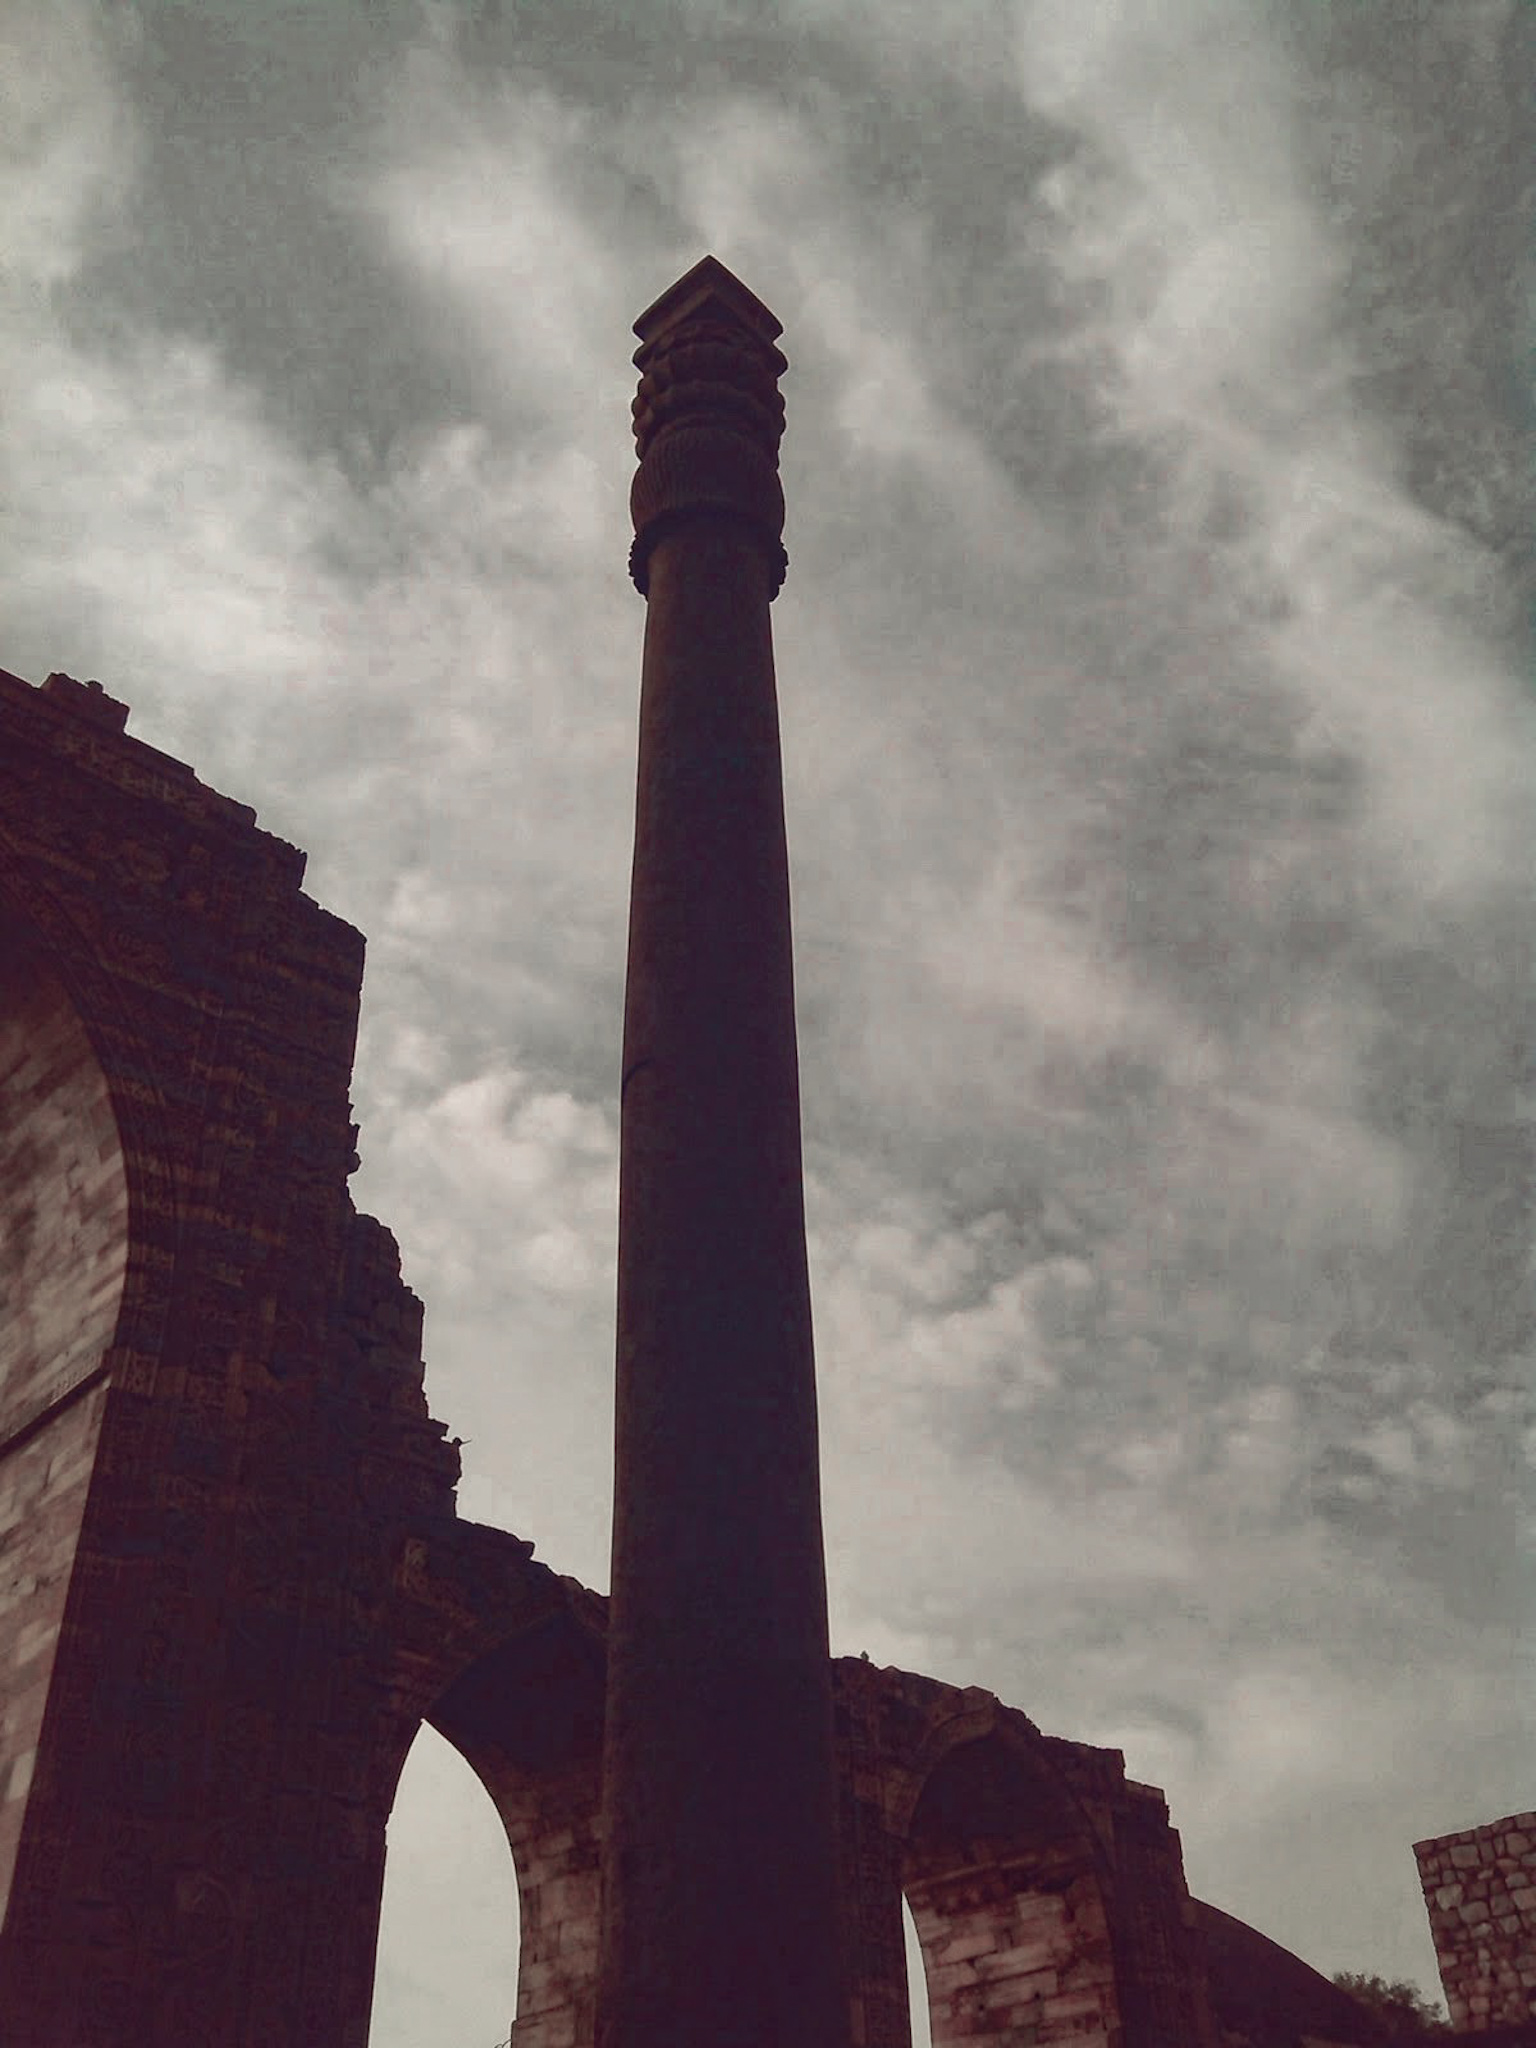 Iron Pillar Delhi